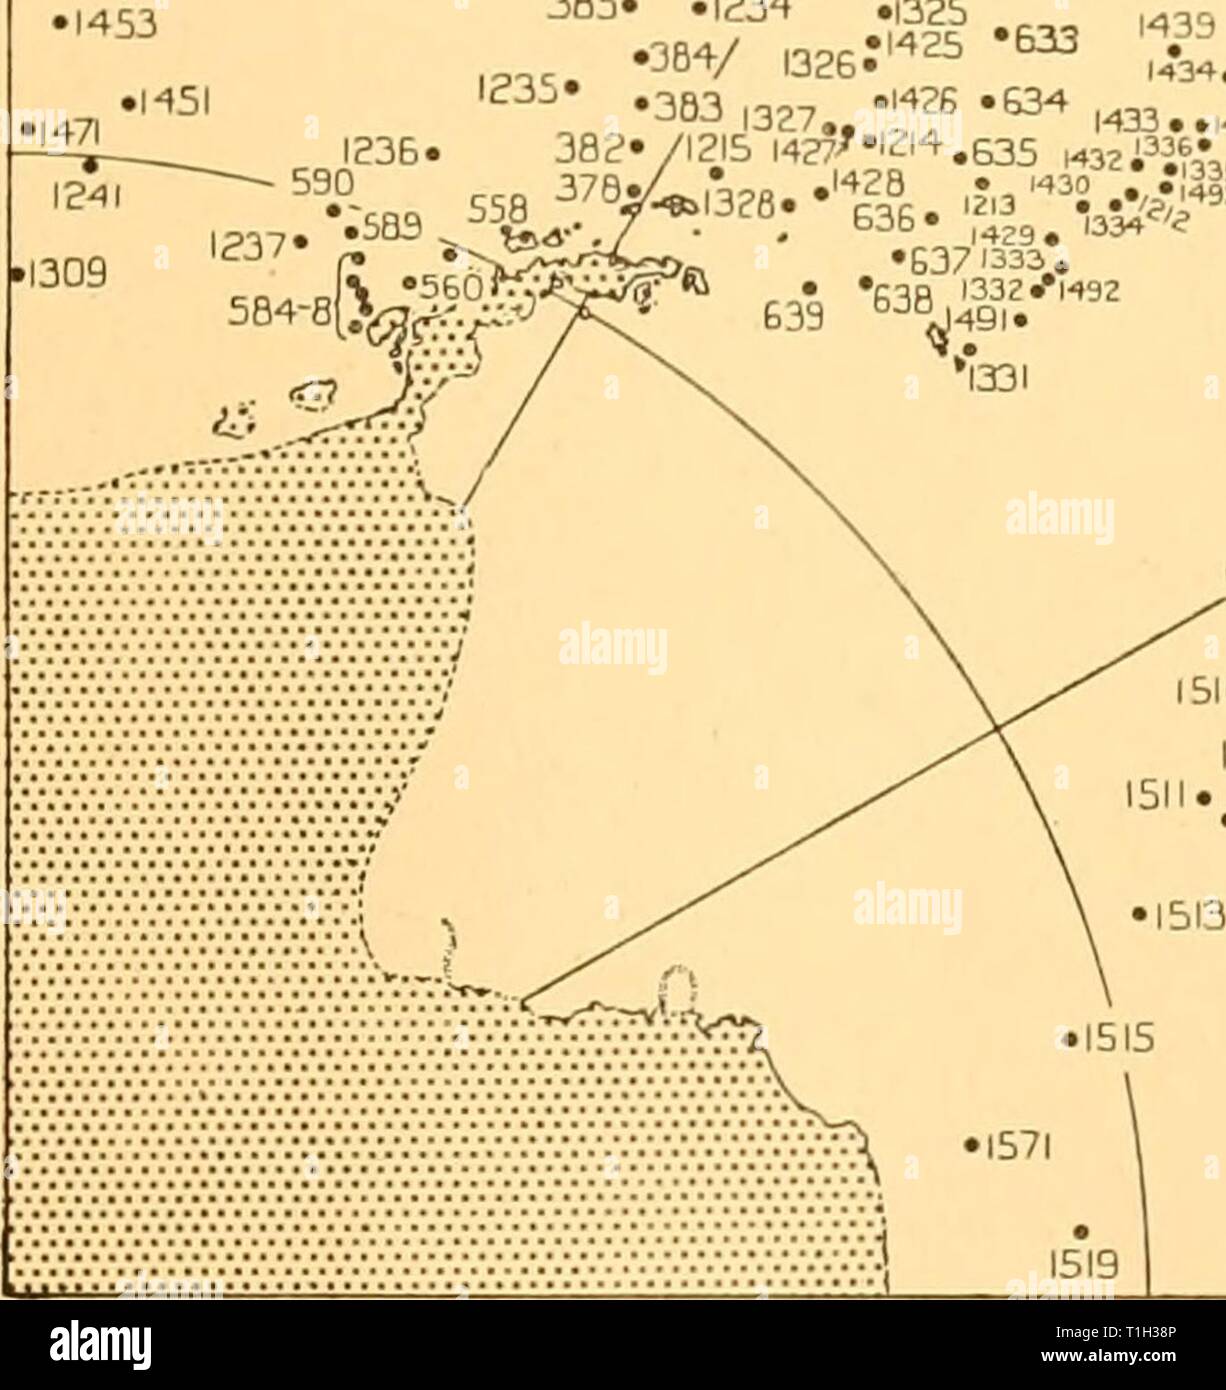 Descubrimiento descubrimiento (1940) informes informes discoveryreports19inst Año: 1940 1233 386 • / ,|4S4 385' .1234 .1325 . . OBV KG.*1*25 '** 'M40 1139 1434. "2',337 4,635 "2i"" •'•38 1429. •6371333. •530 1332*1492 35°S Fig. 2. Posiciones de destino donde las observaciones de los fosfatos o silicatos fueron hechas en el sector del Atlántico Sur del Océano Austral. 100-200 millas al norte de la Convergencia Antártica, la superficie se calienta el agua mezclada con el agua del subsuelo y de las aguas superficiales de la zona sub-antártico y, finalmente, forma parte de la Antártida actual intermedios. La capa imme Foto de stock